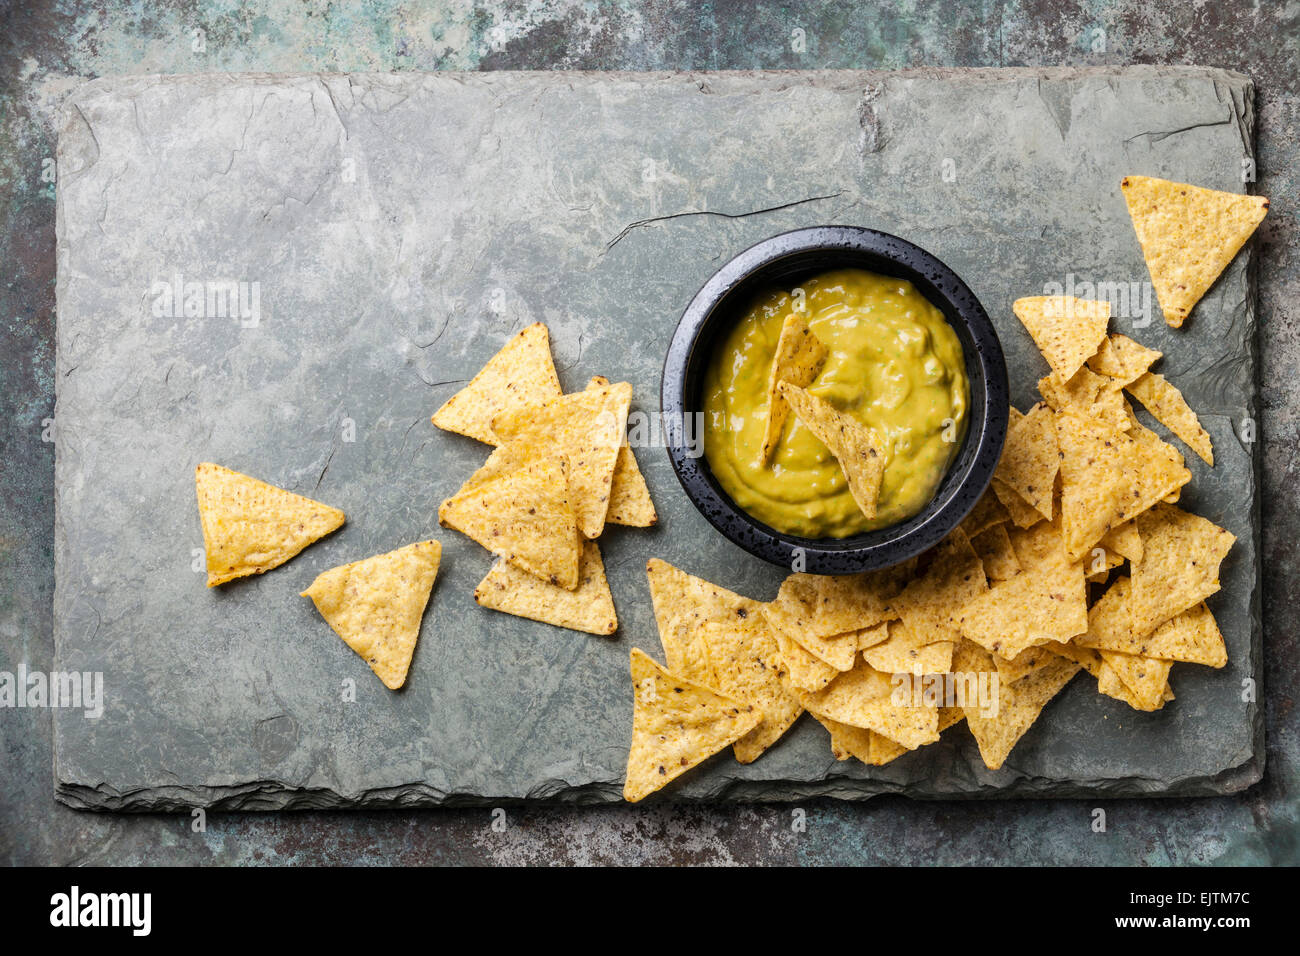 Frische Guacamole Dip mit Nachos Chips auf Stein Schiefer Hintergrund Stockfoto